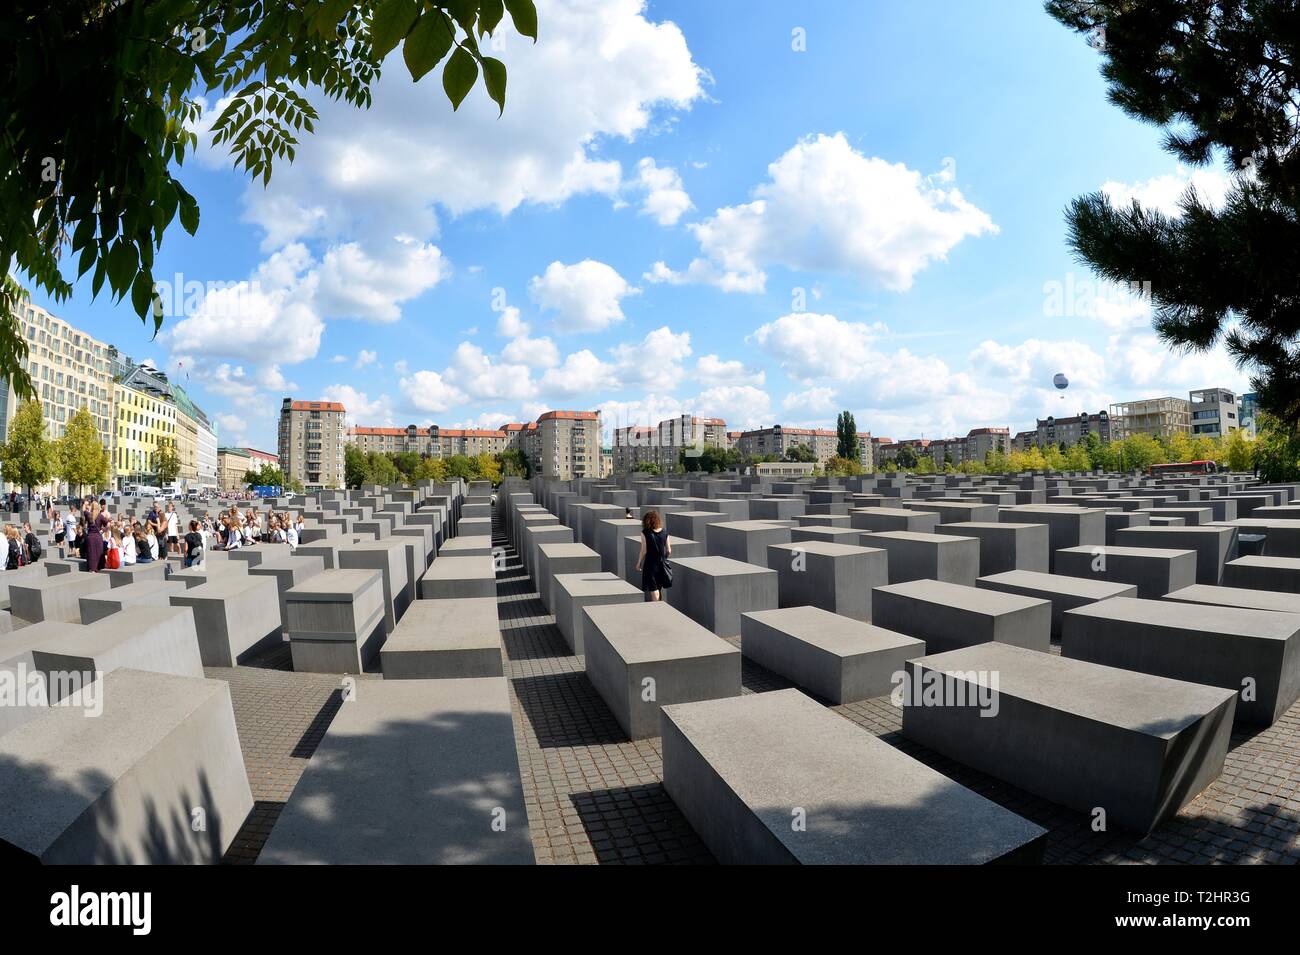 Mémorial de l'holocauste, le Mémorial aux Juifs assassinés d'Europe, l'Allemagne, Berlin Banque D'Images